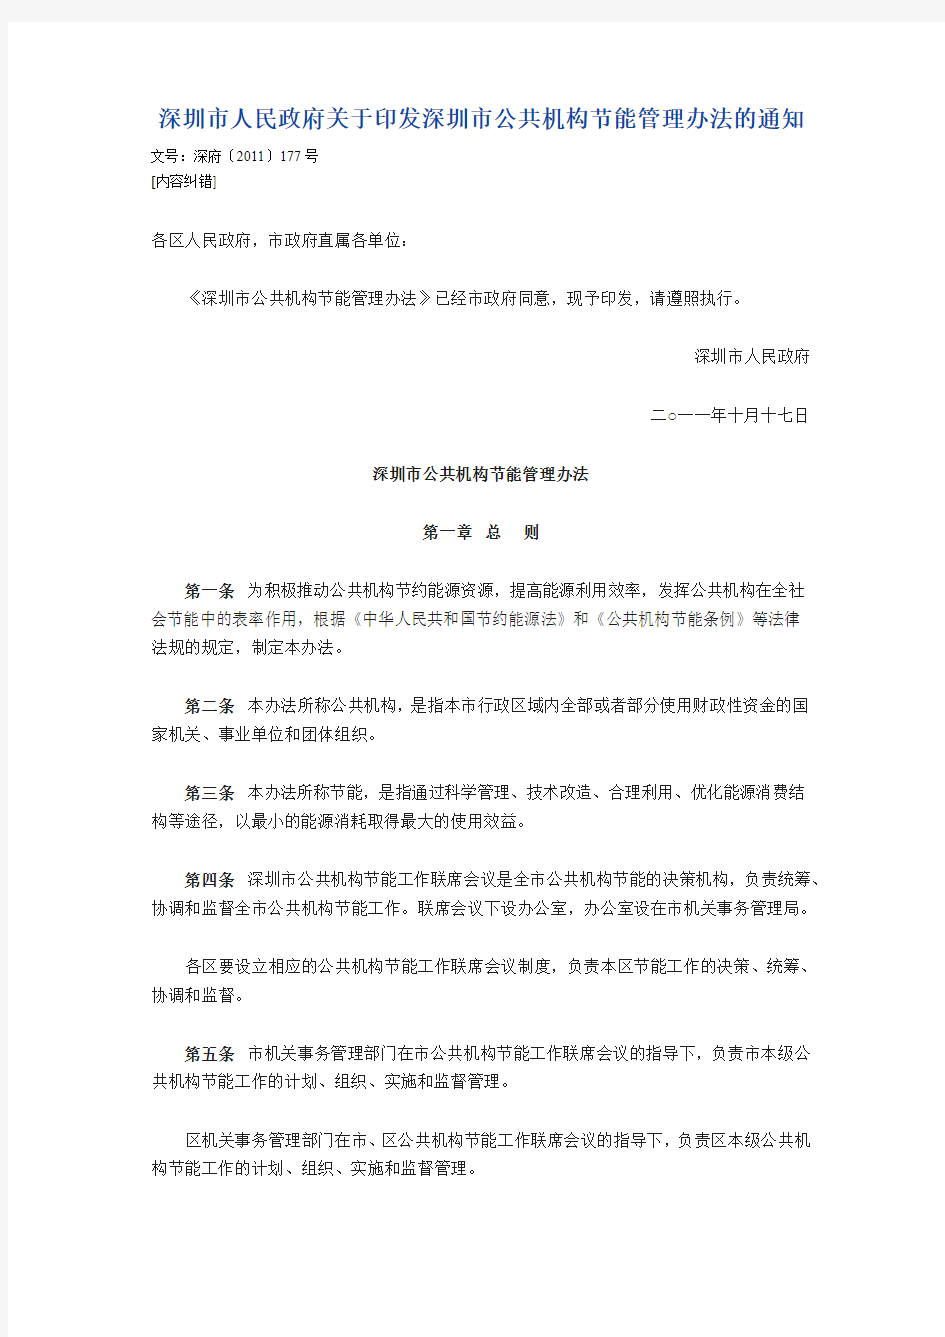 深圳市人民政府关于印发深圳市公共机构节能管理办法的通知